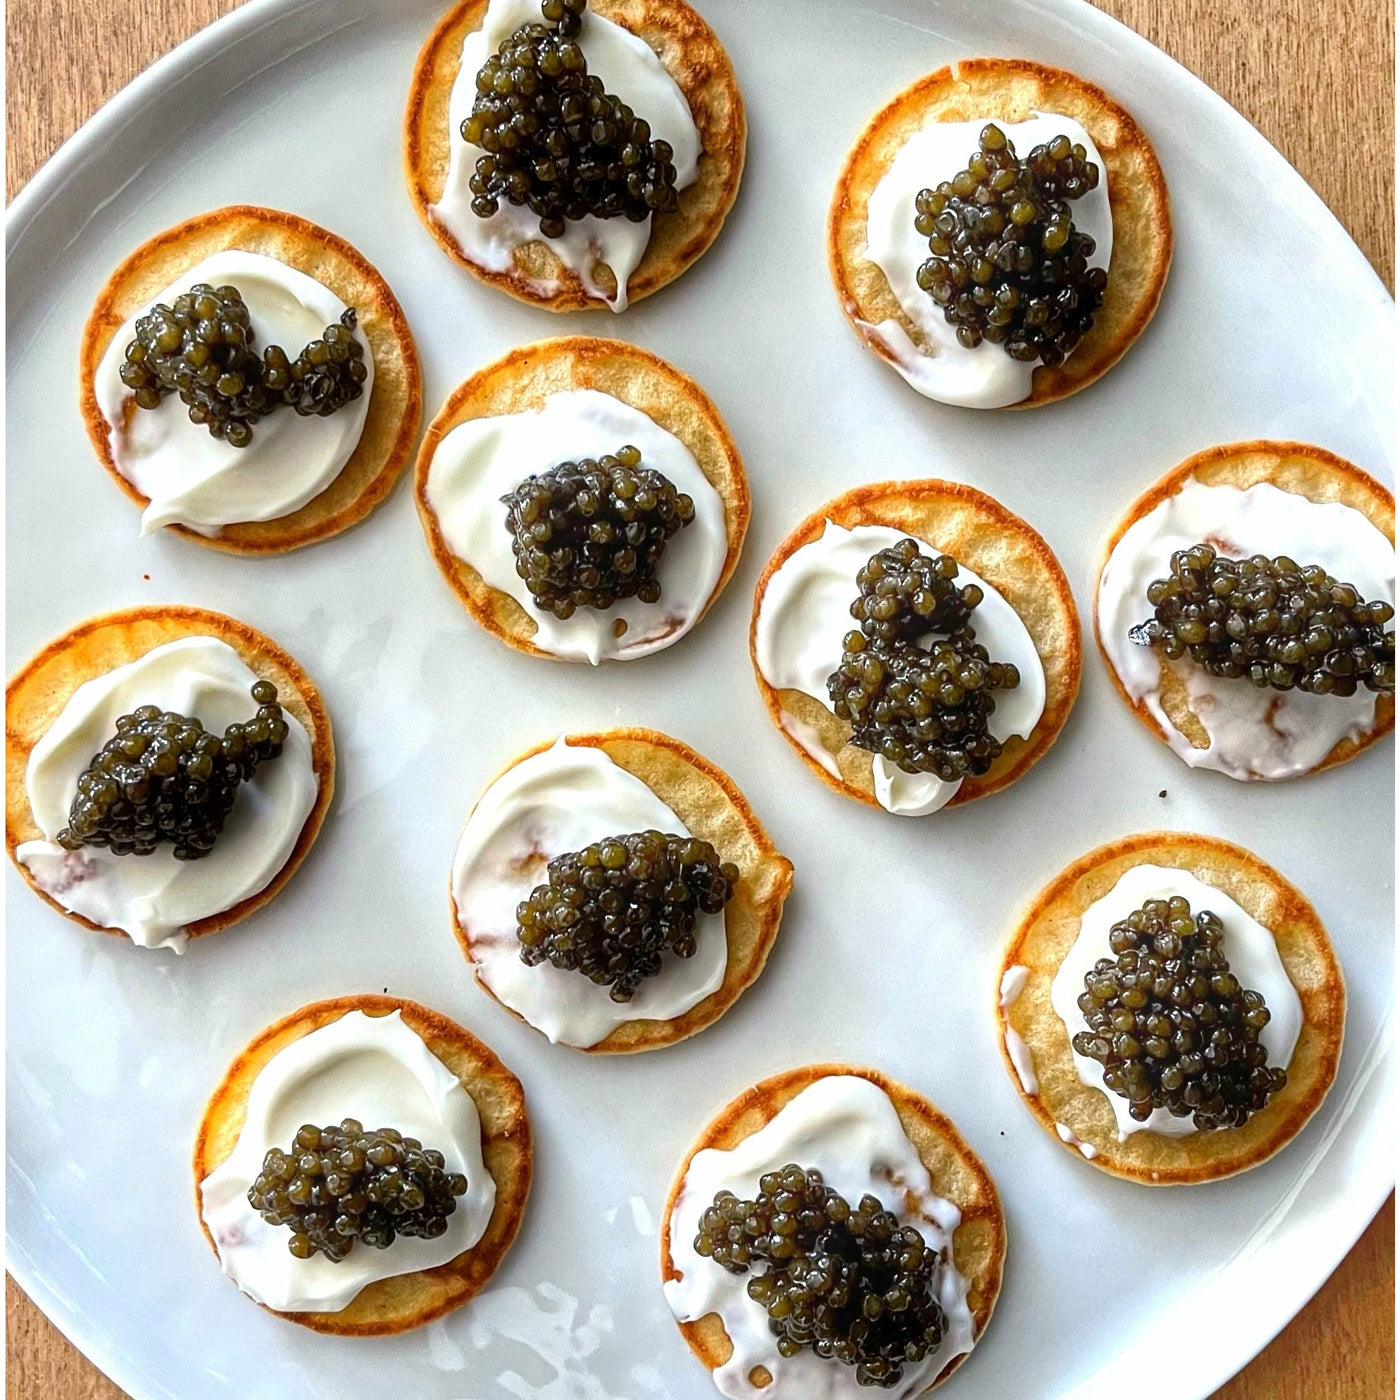 Gourmet Cheese Fondue Set – Kolikof® Caviar & Gourmet